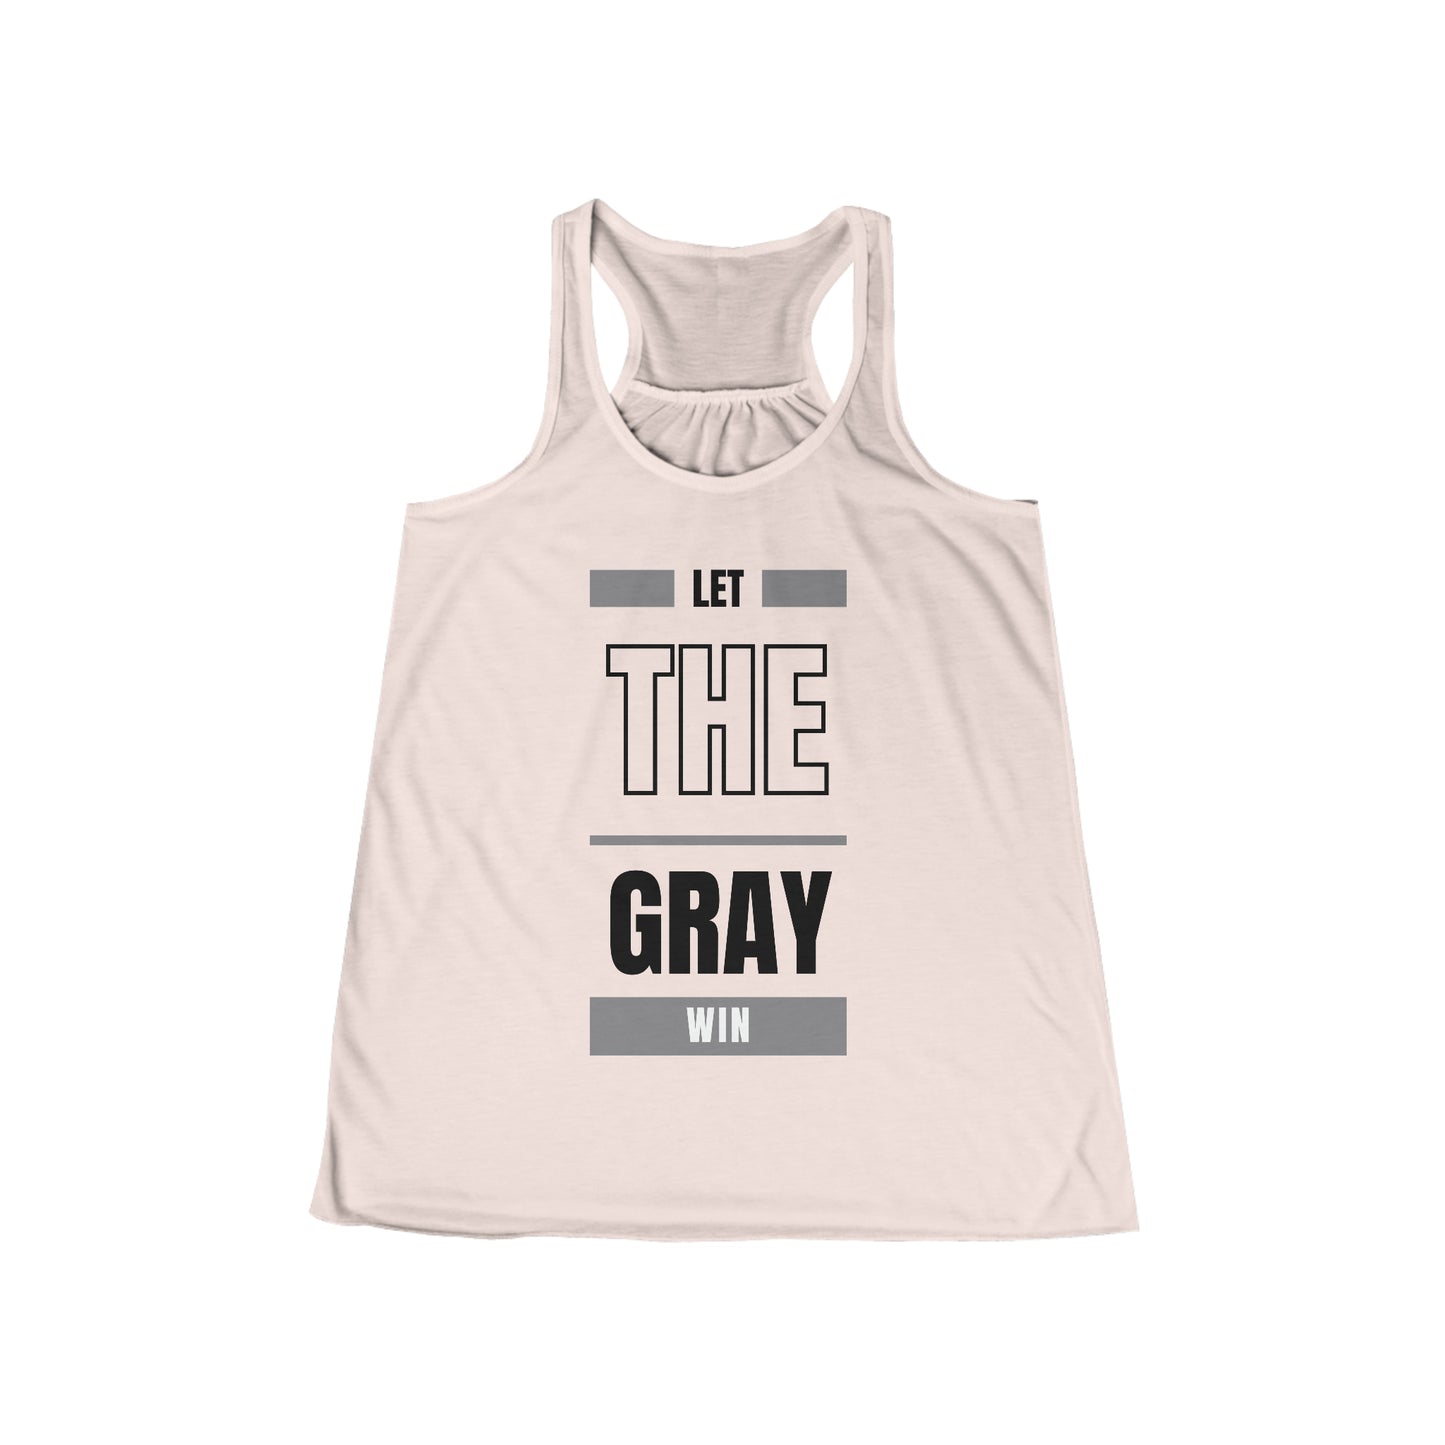 Let the Gray Win. Women's Flowy Racerback Tank